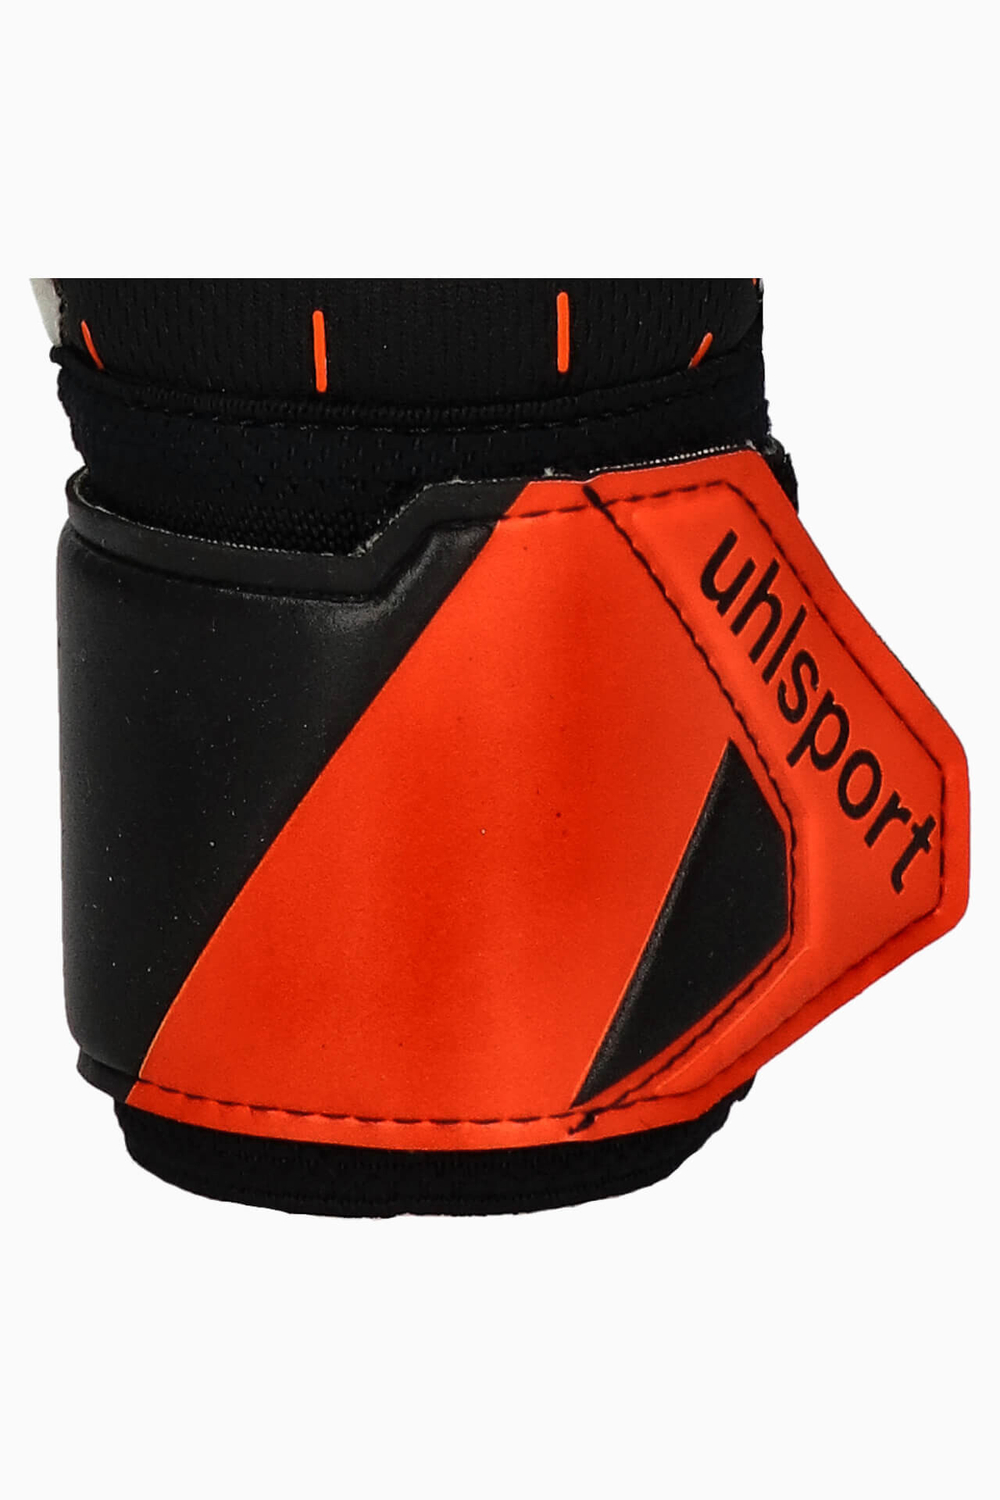 Вратарские перчатки Uhlsport Speed Contact SuperSoft Junior